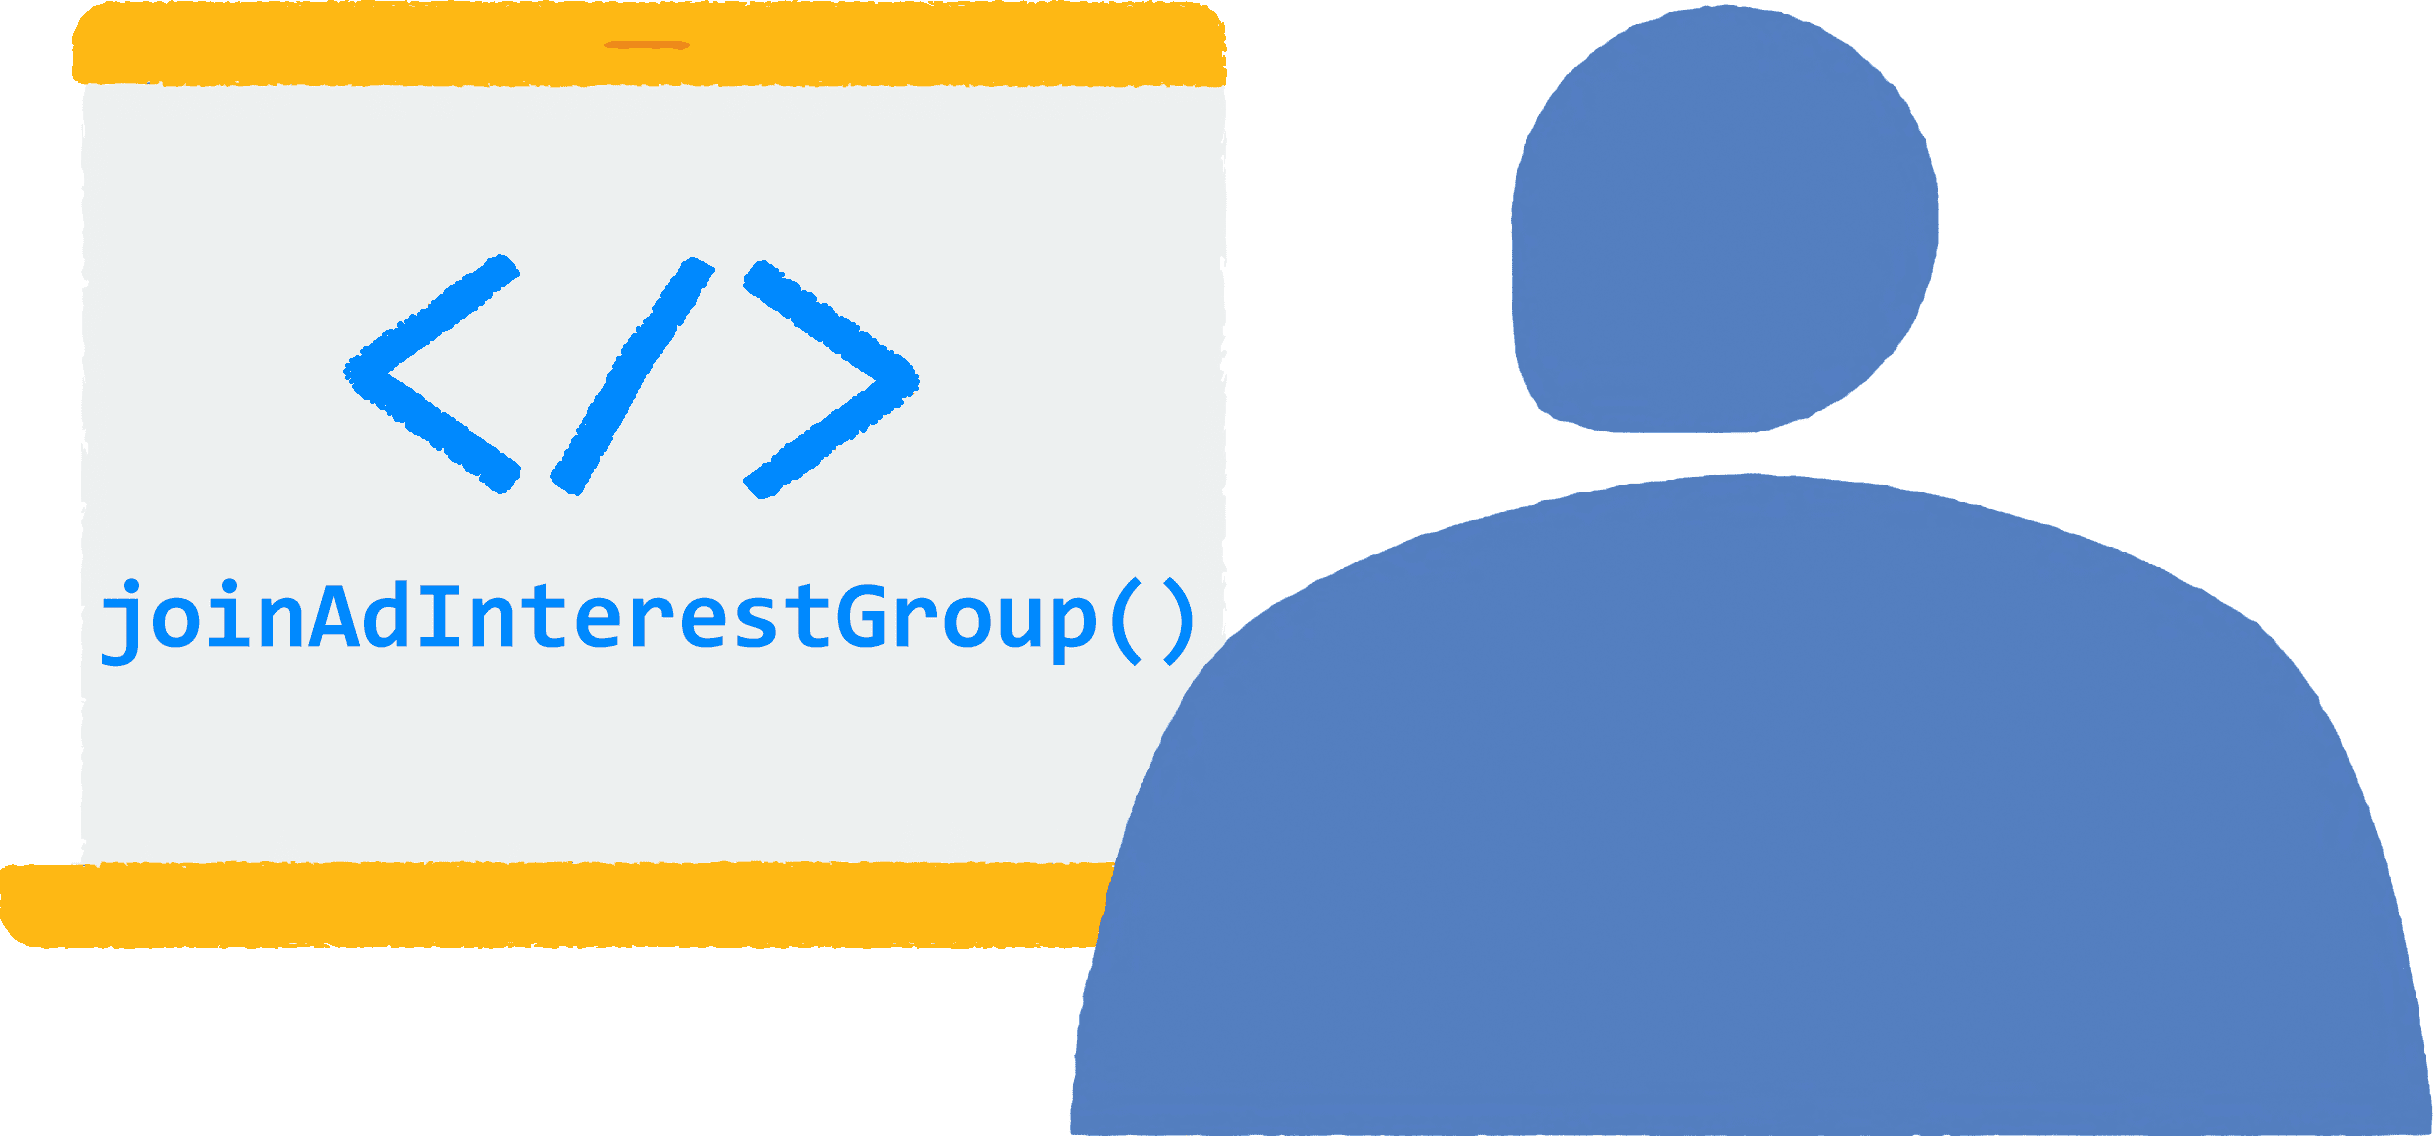 노트북으로 브라우저로 사이트를 보고 있는 사람을 보여주는 삽화 JavaScript 코드 joinAdInterestGroup()이 브라우저에서 실행되고 있습니다.